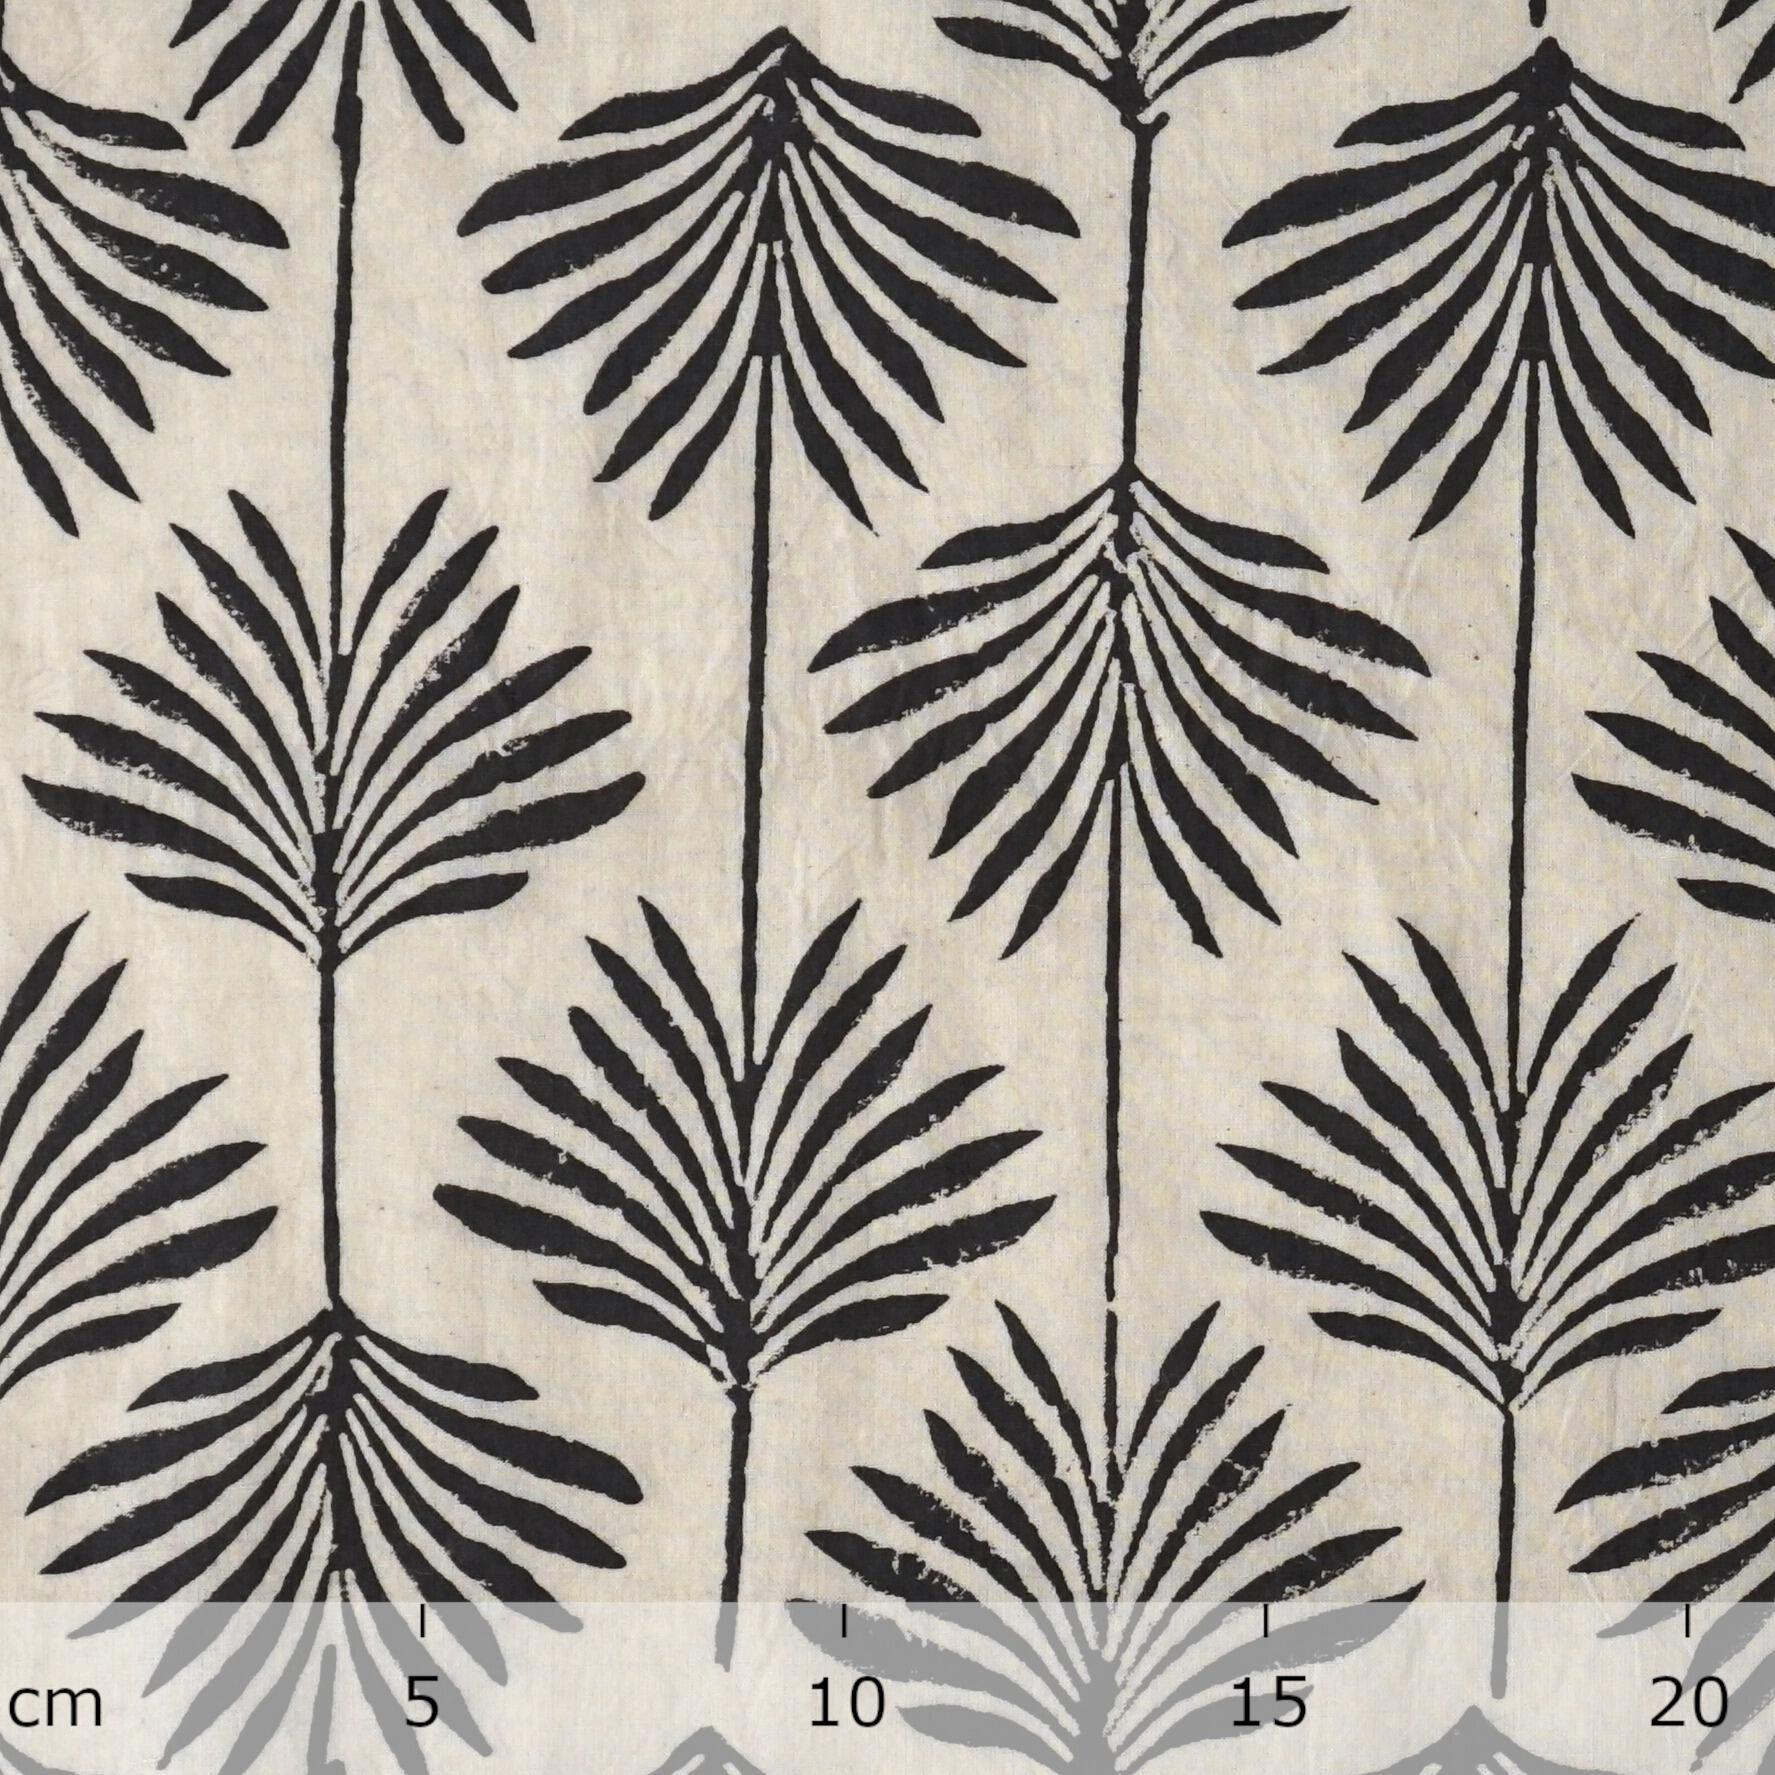 5 - SIK47 - Hand Block-Printed Cotton - Kalboishakhi Design - Black Dye - Ruler